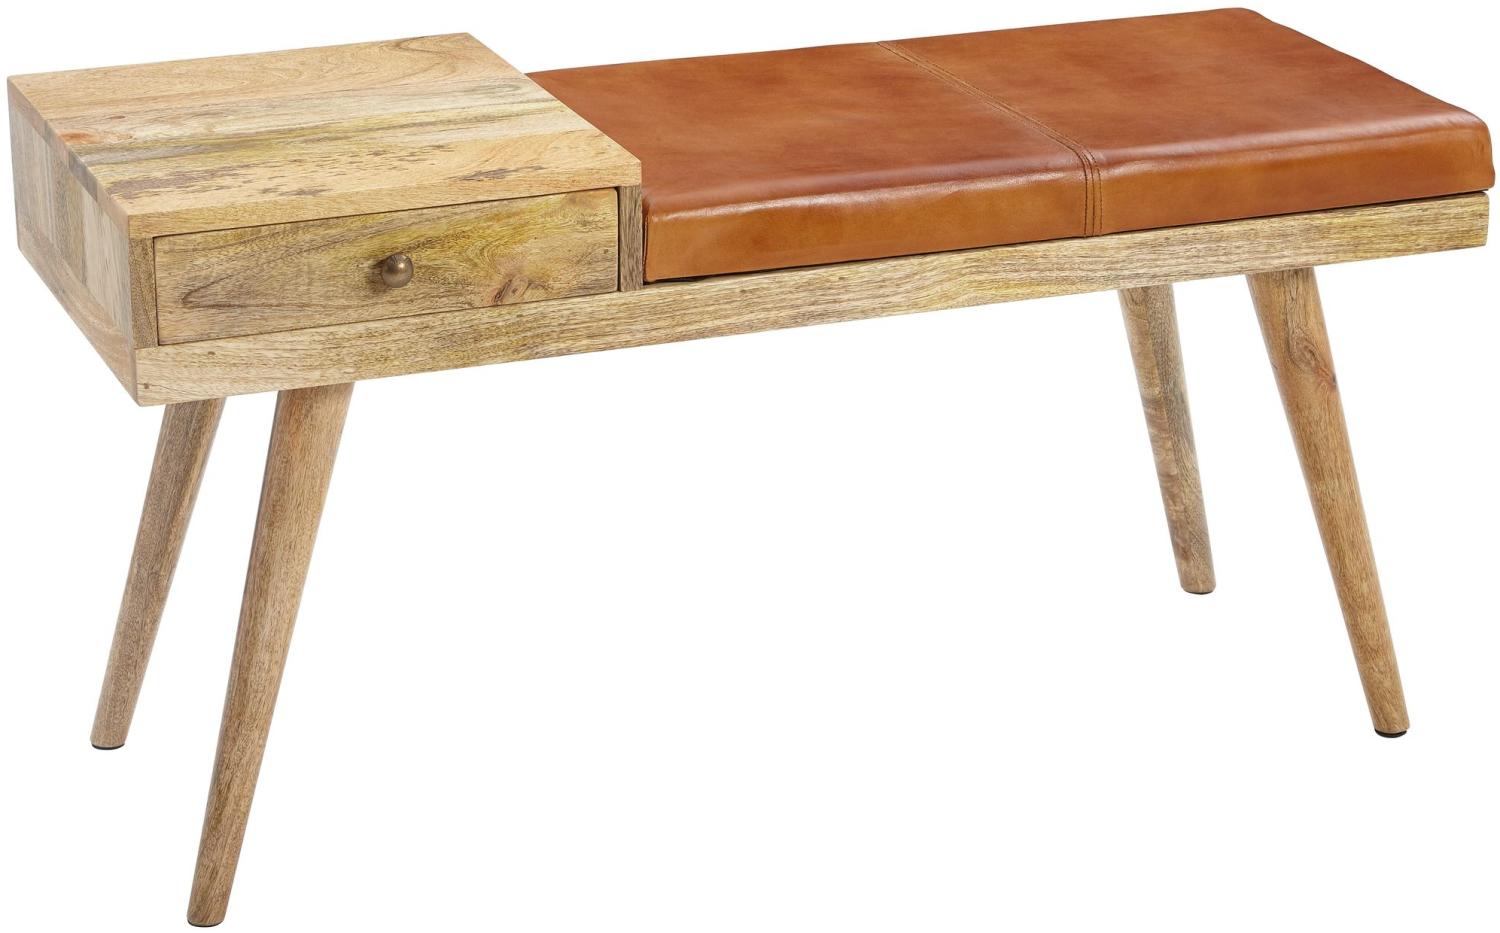 KADIMA DESIGN Retro-Stil Sitzbank mit Stauraum und Ziegenleder-Bezug. Material: Leder Bild 1